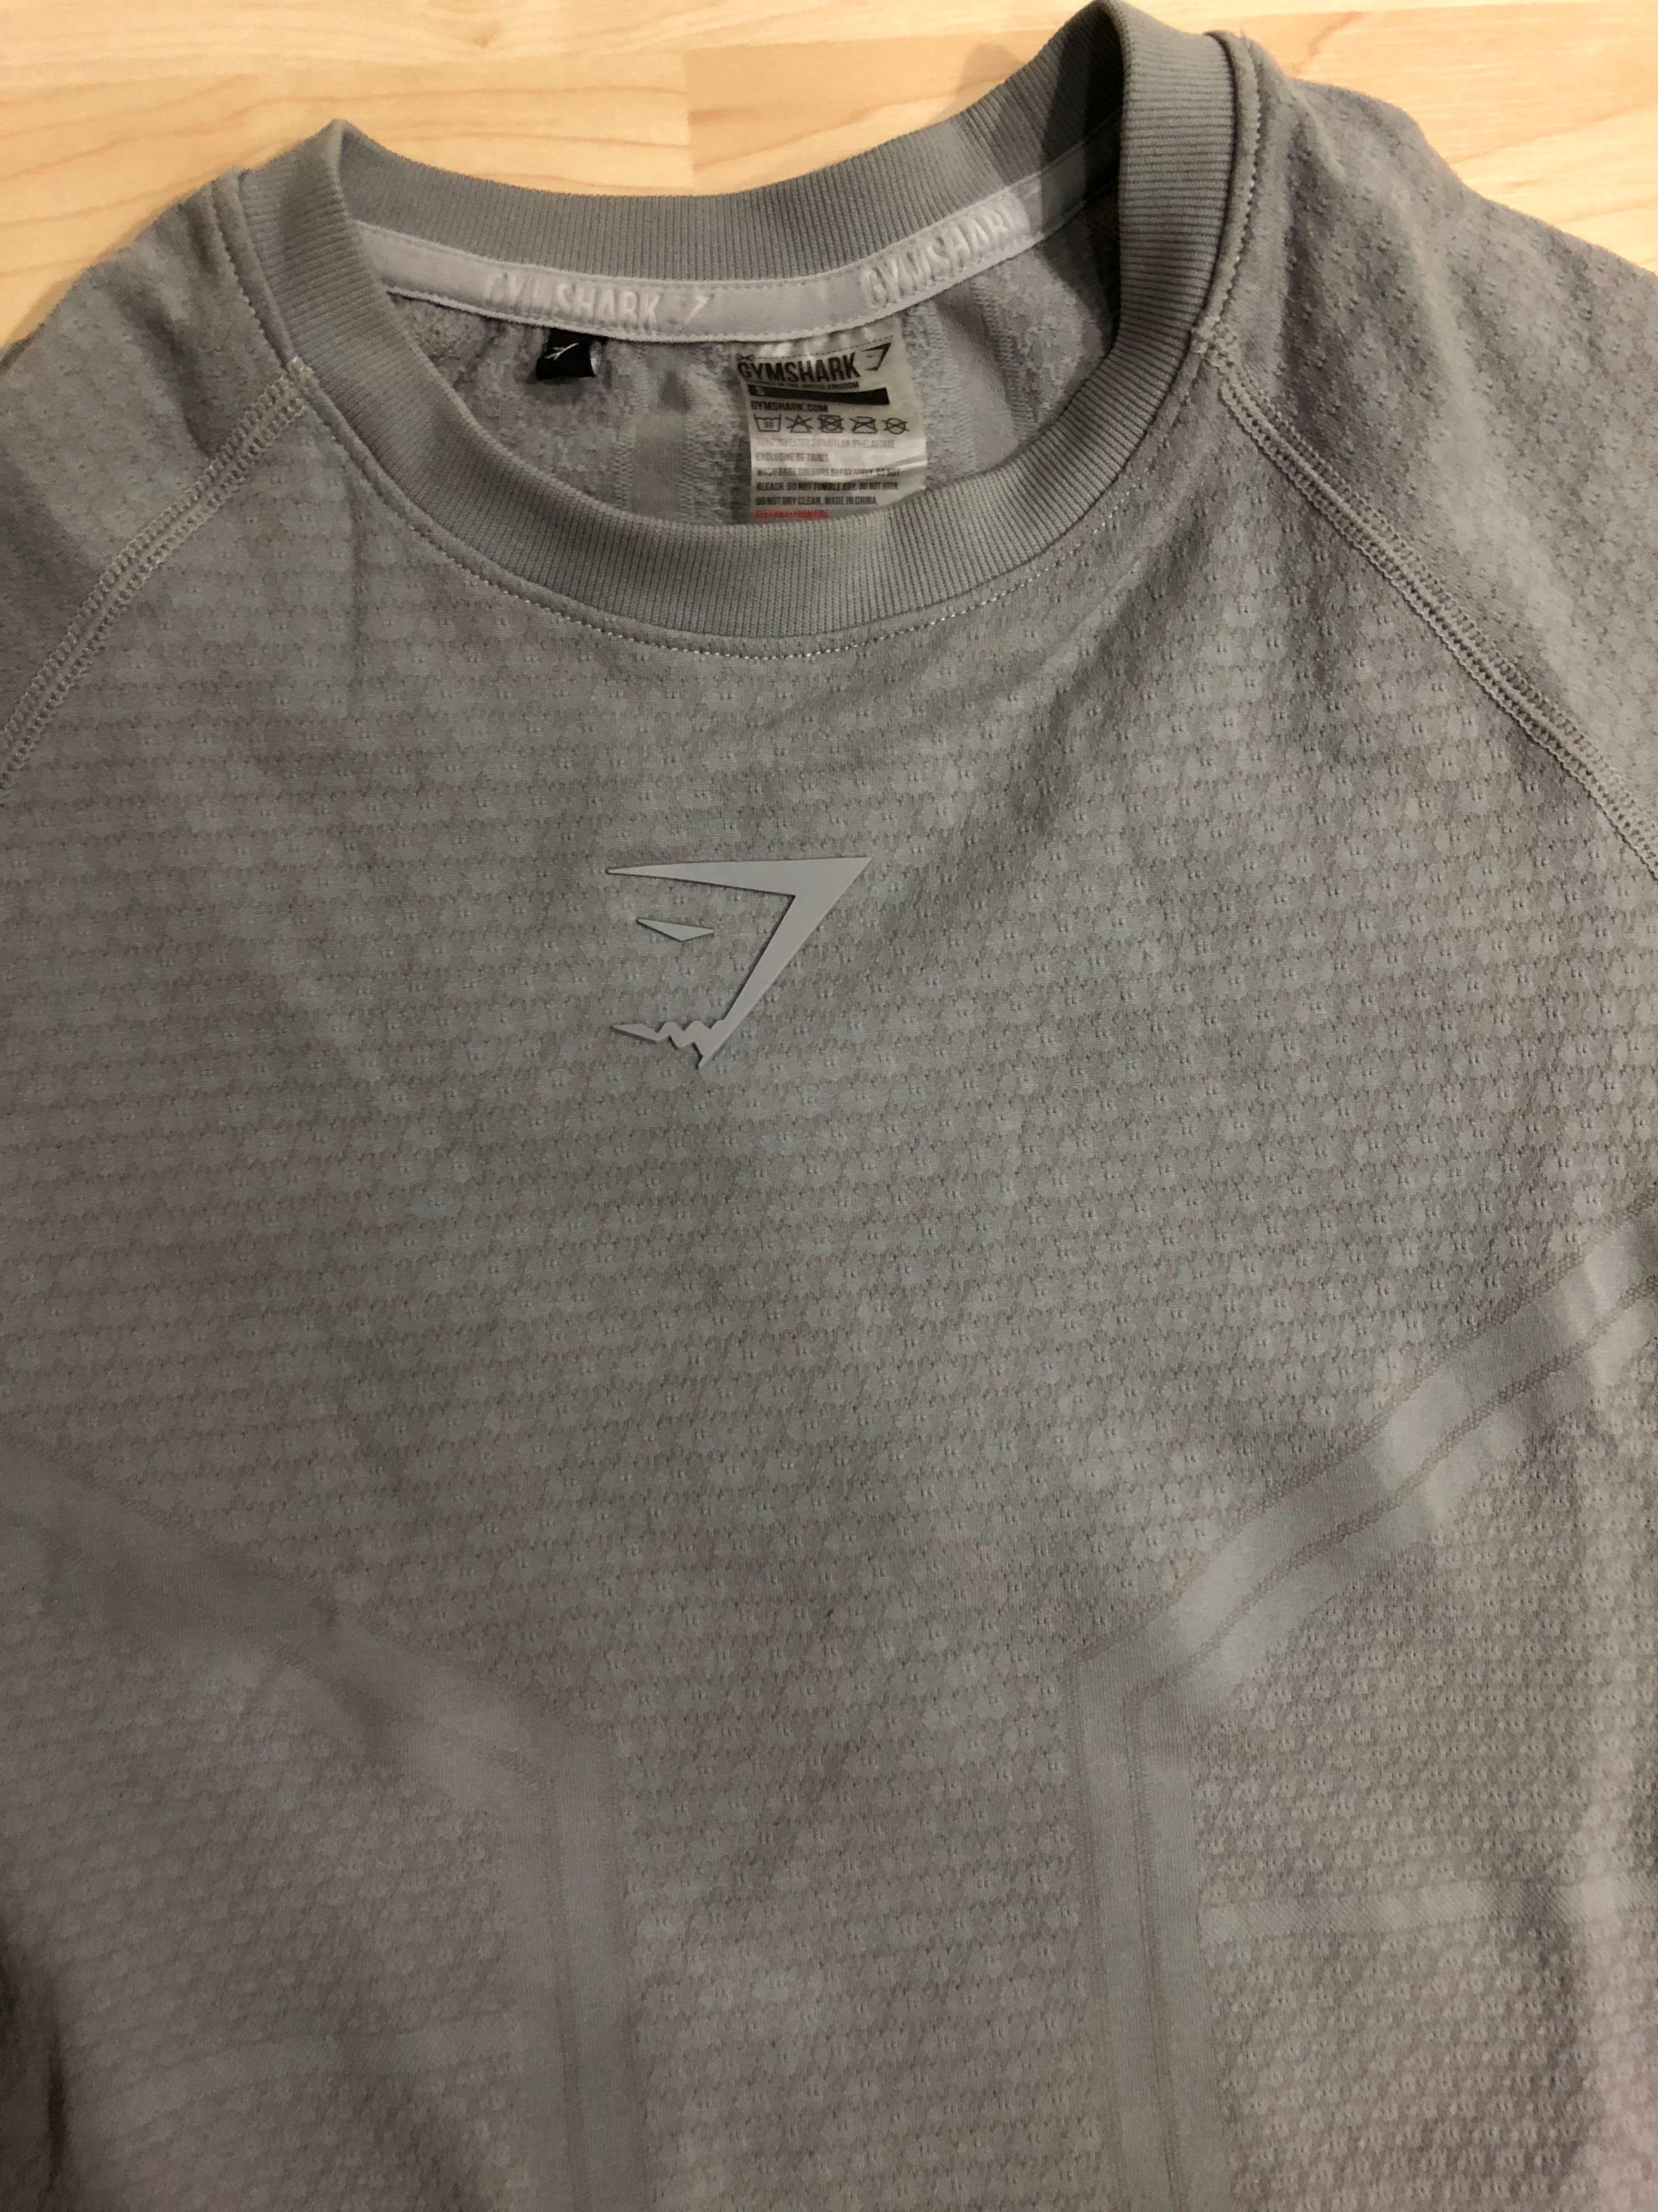 Gymshark, Shirts, Rare Grey Gymshark Onyx V2 Shirt